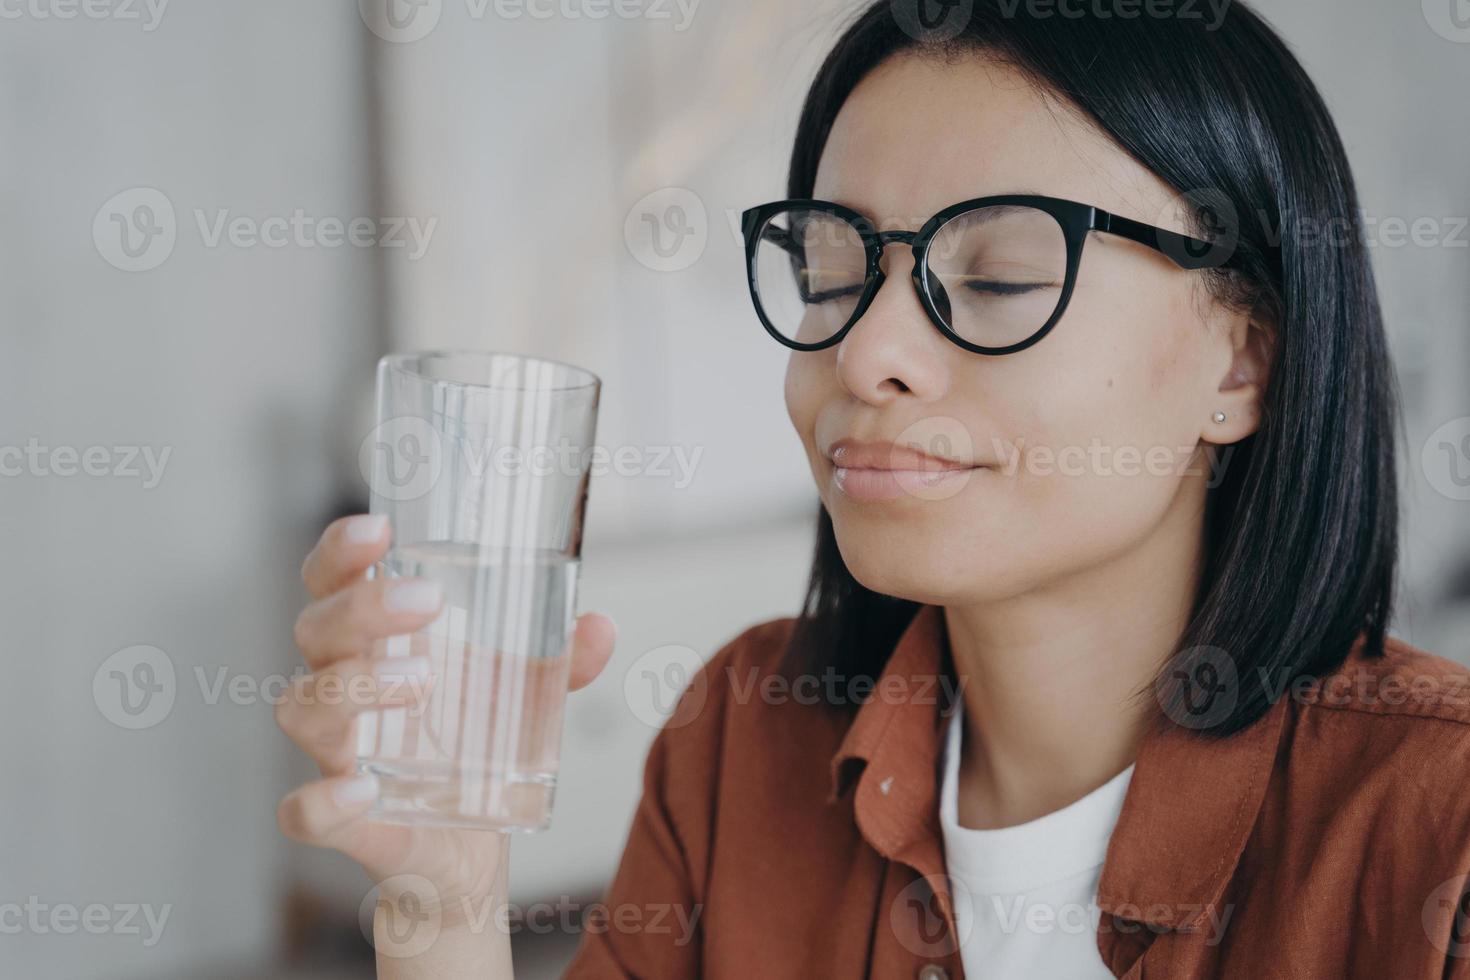 mulher feliz de óculos detém copo de água pura, olhos fechados. estilo de vida saudável, bem-estar foto